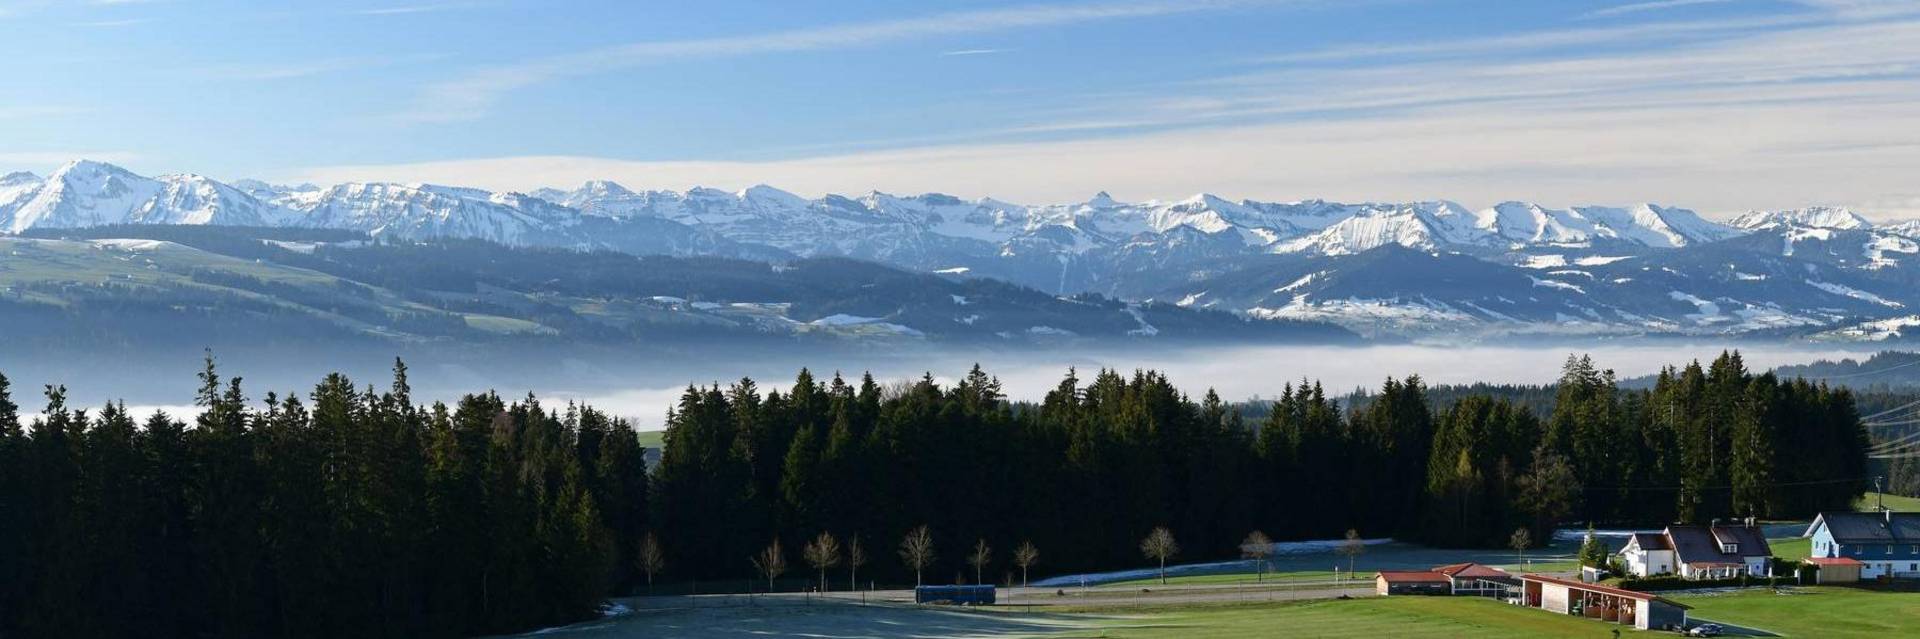 Scheidegg-Golfplatz-Alpen